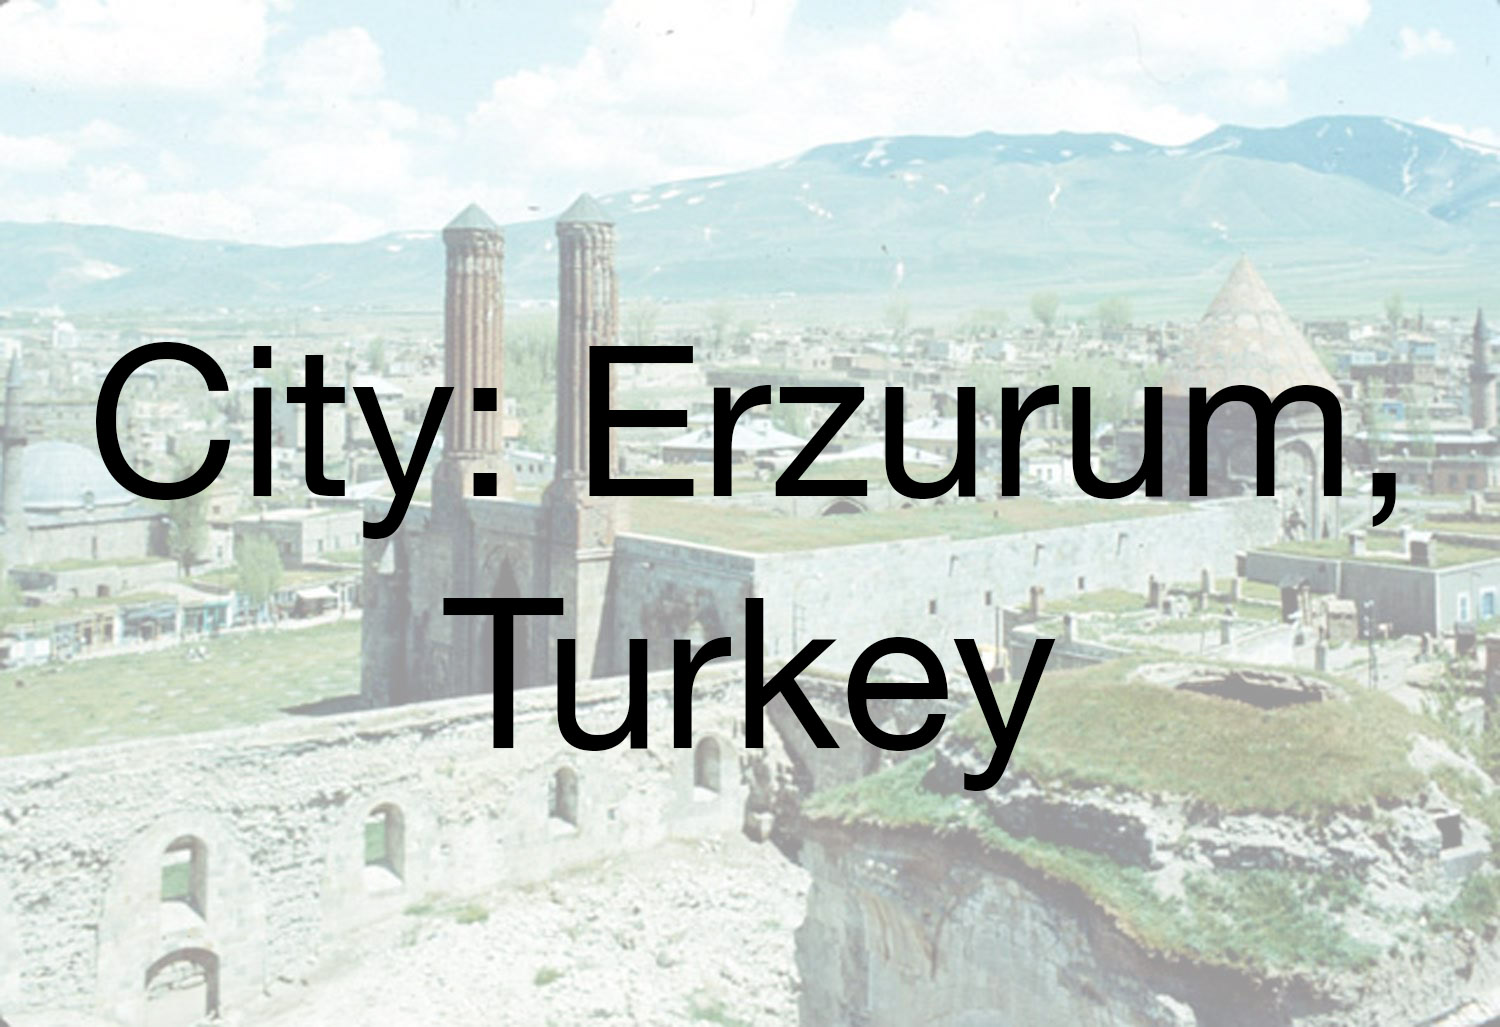 Erzurum 